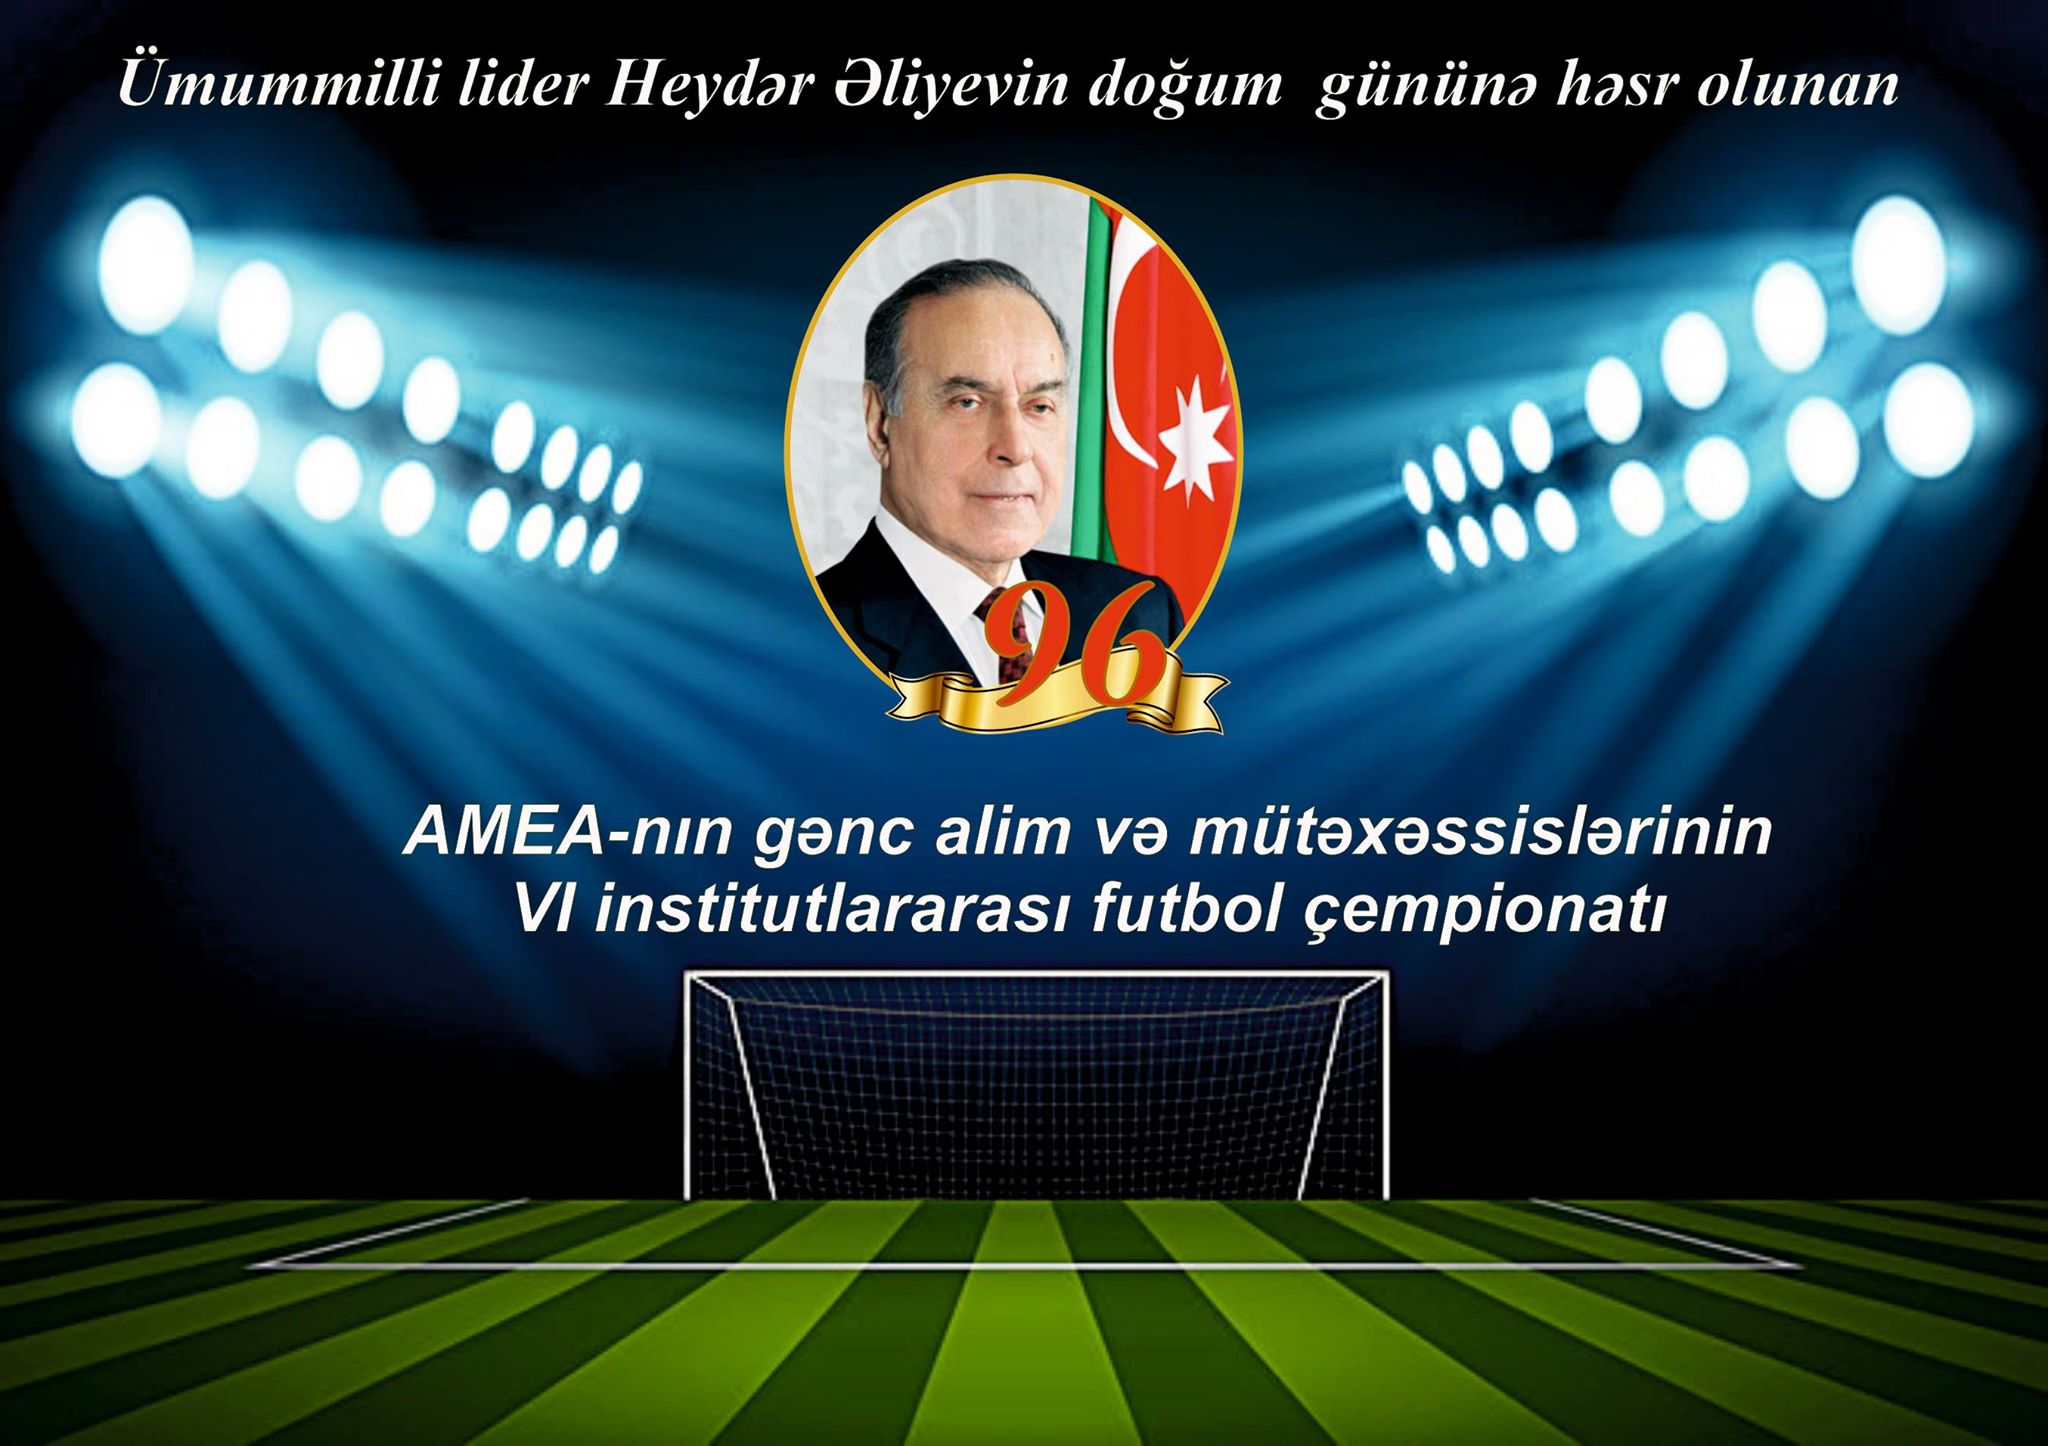 AMEA gənc alim və mütəxəssislərin VI Futbol Çempionatının qrup oyunlarında böyük hesablar qeydə alınıb